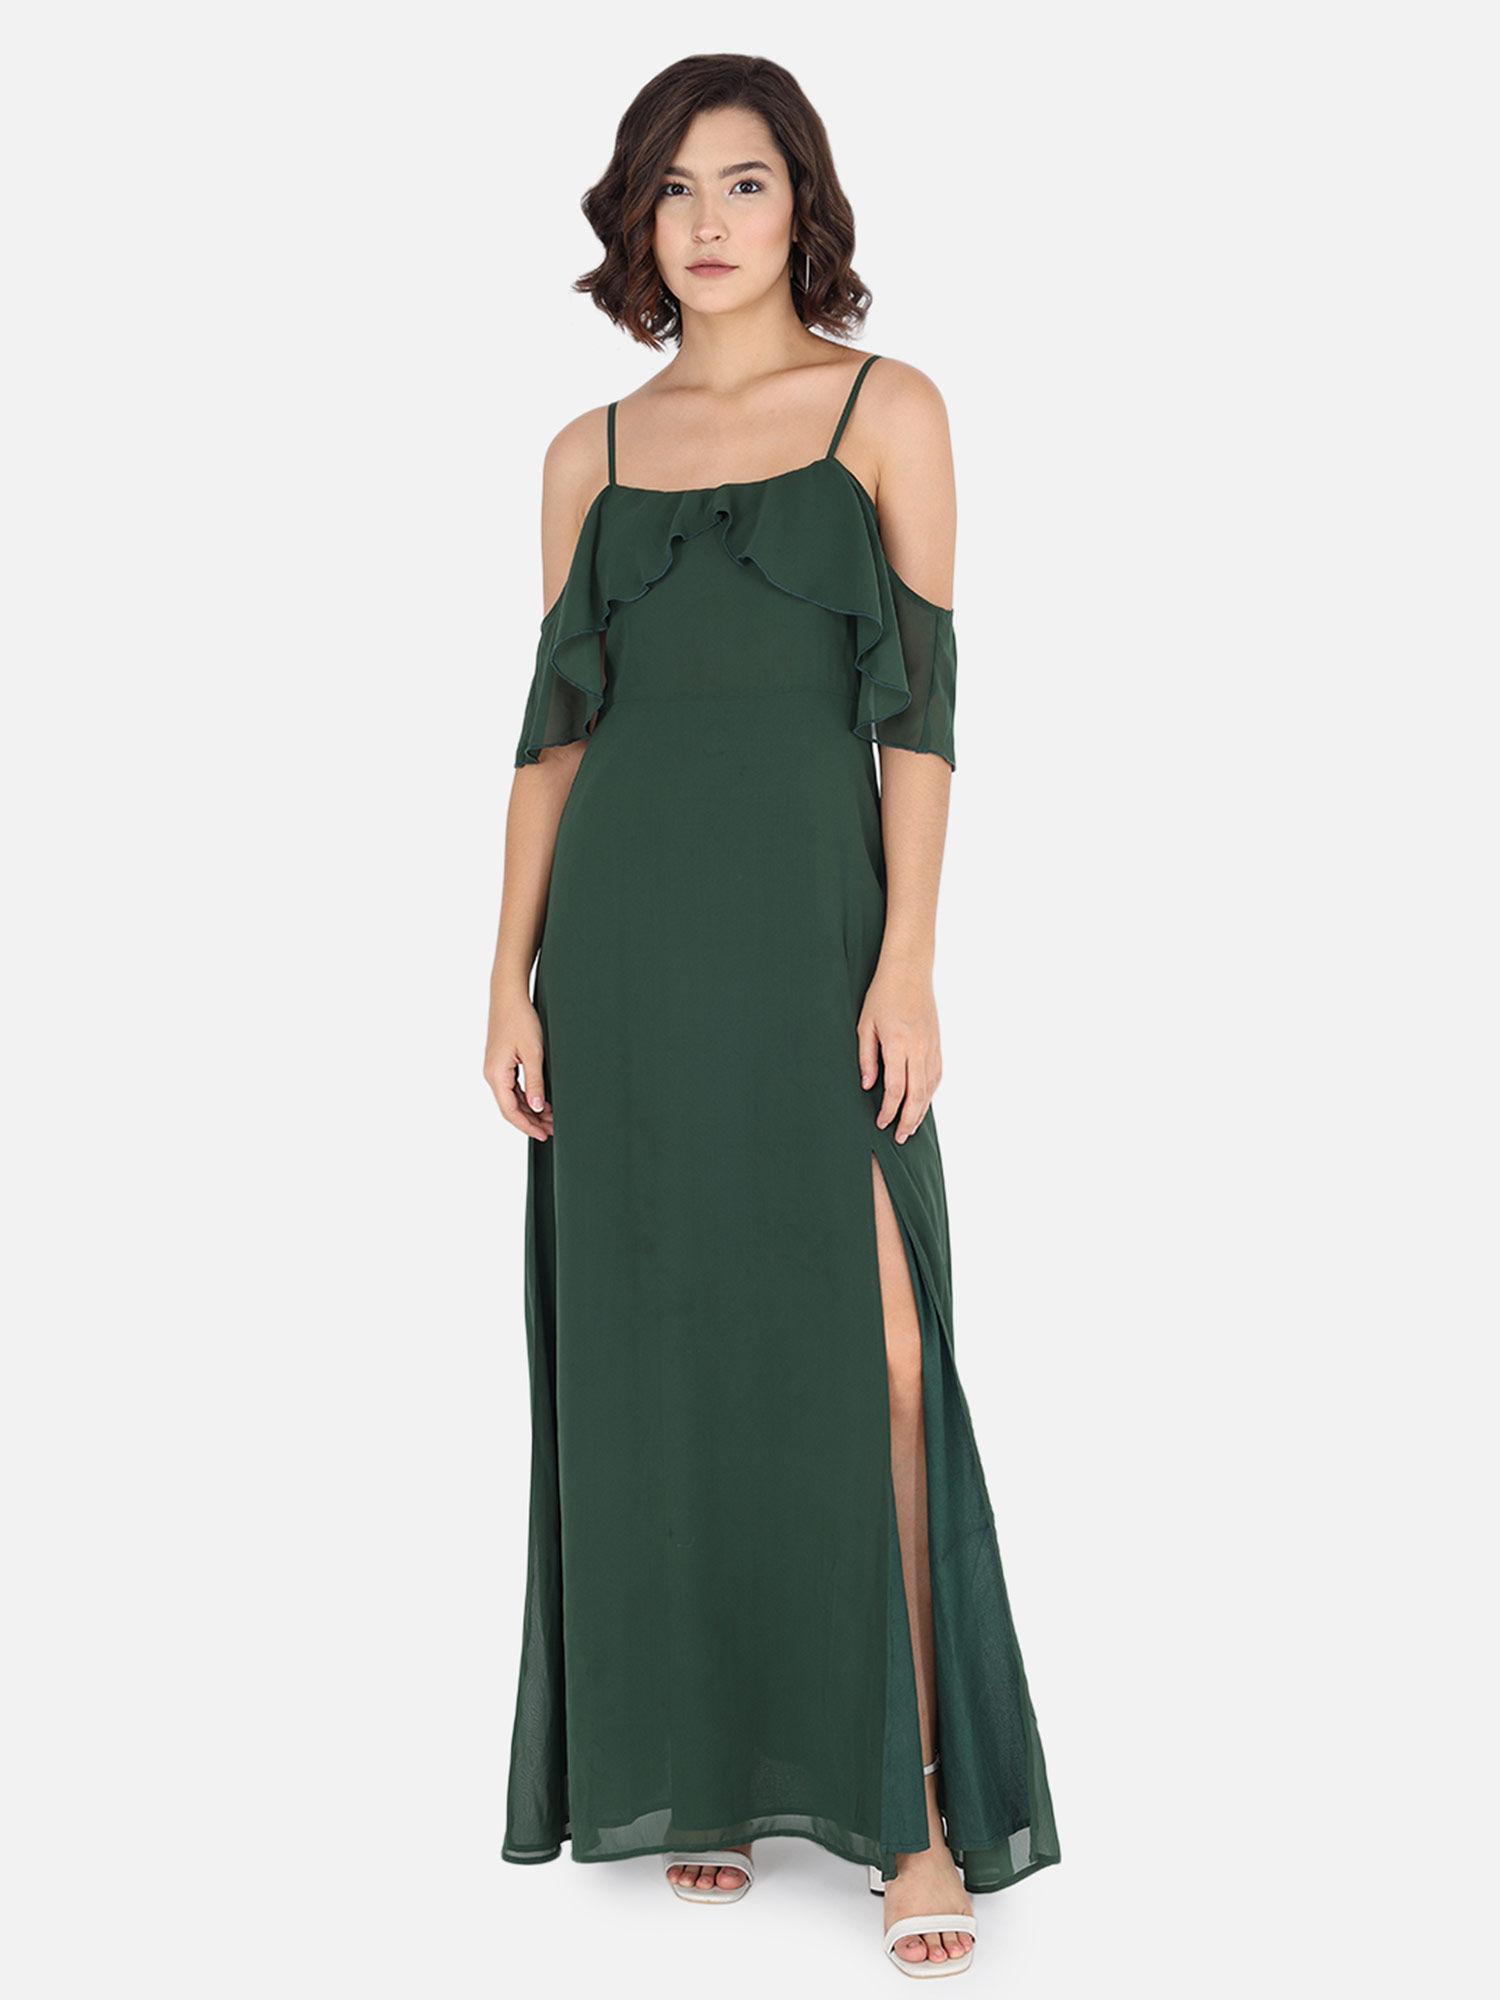 solid green maxi dress